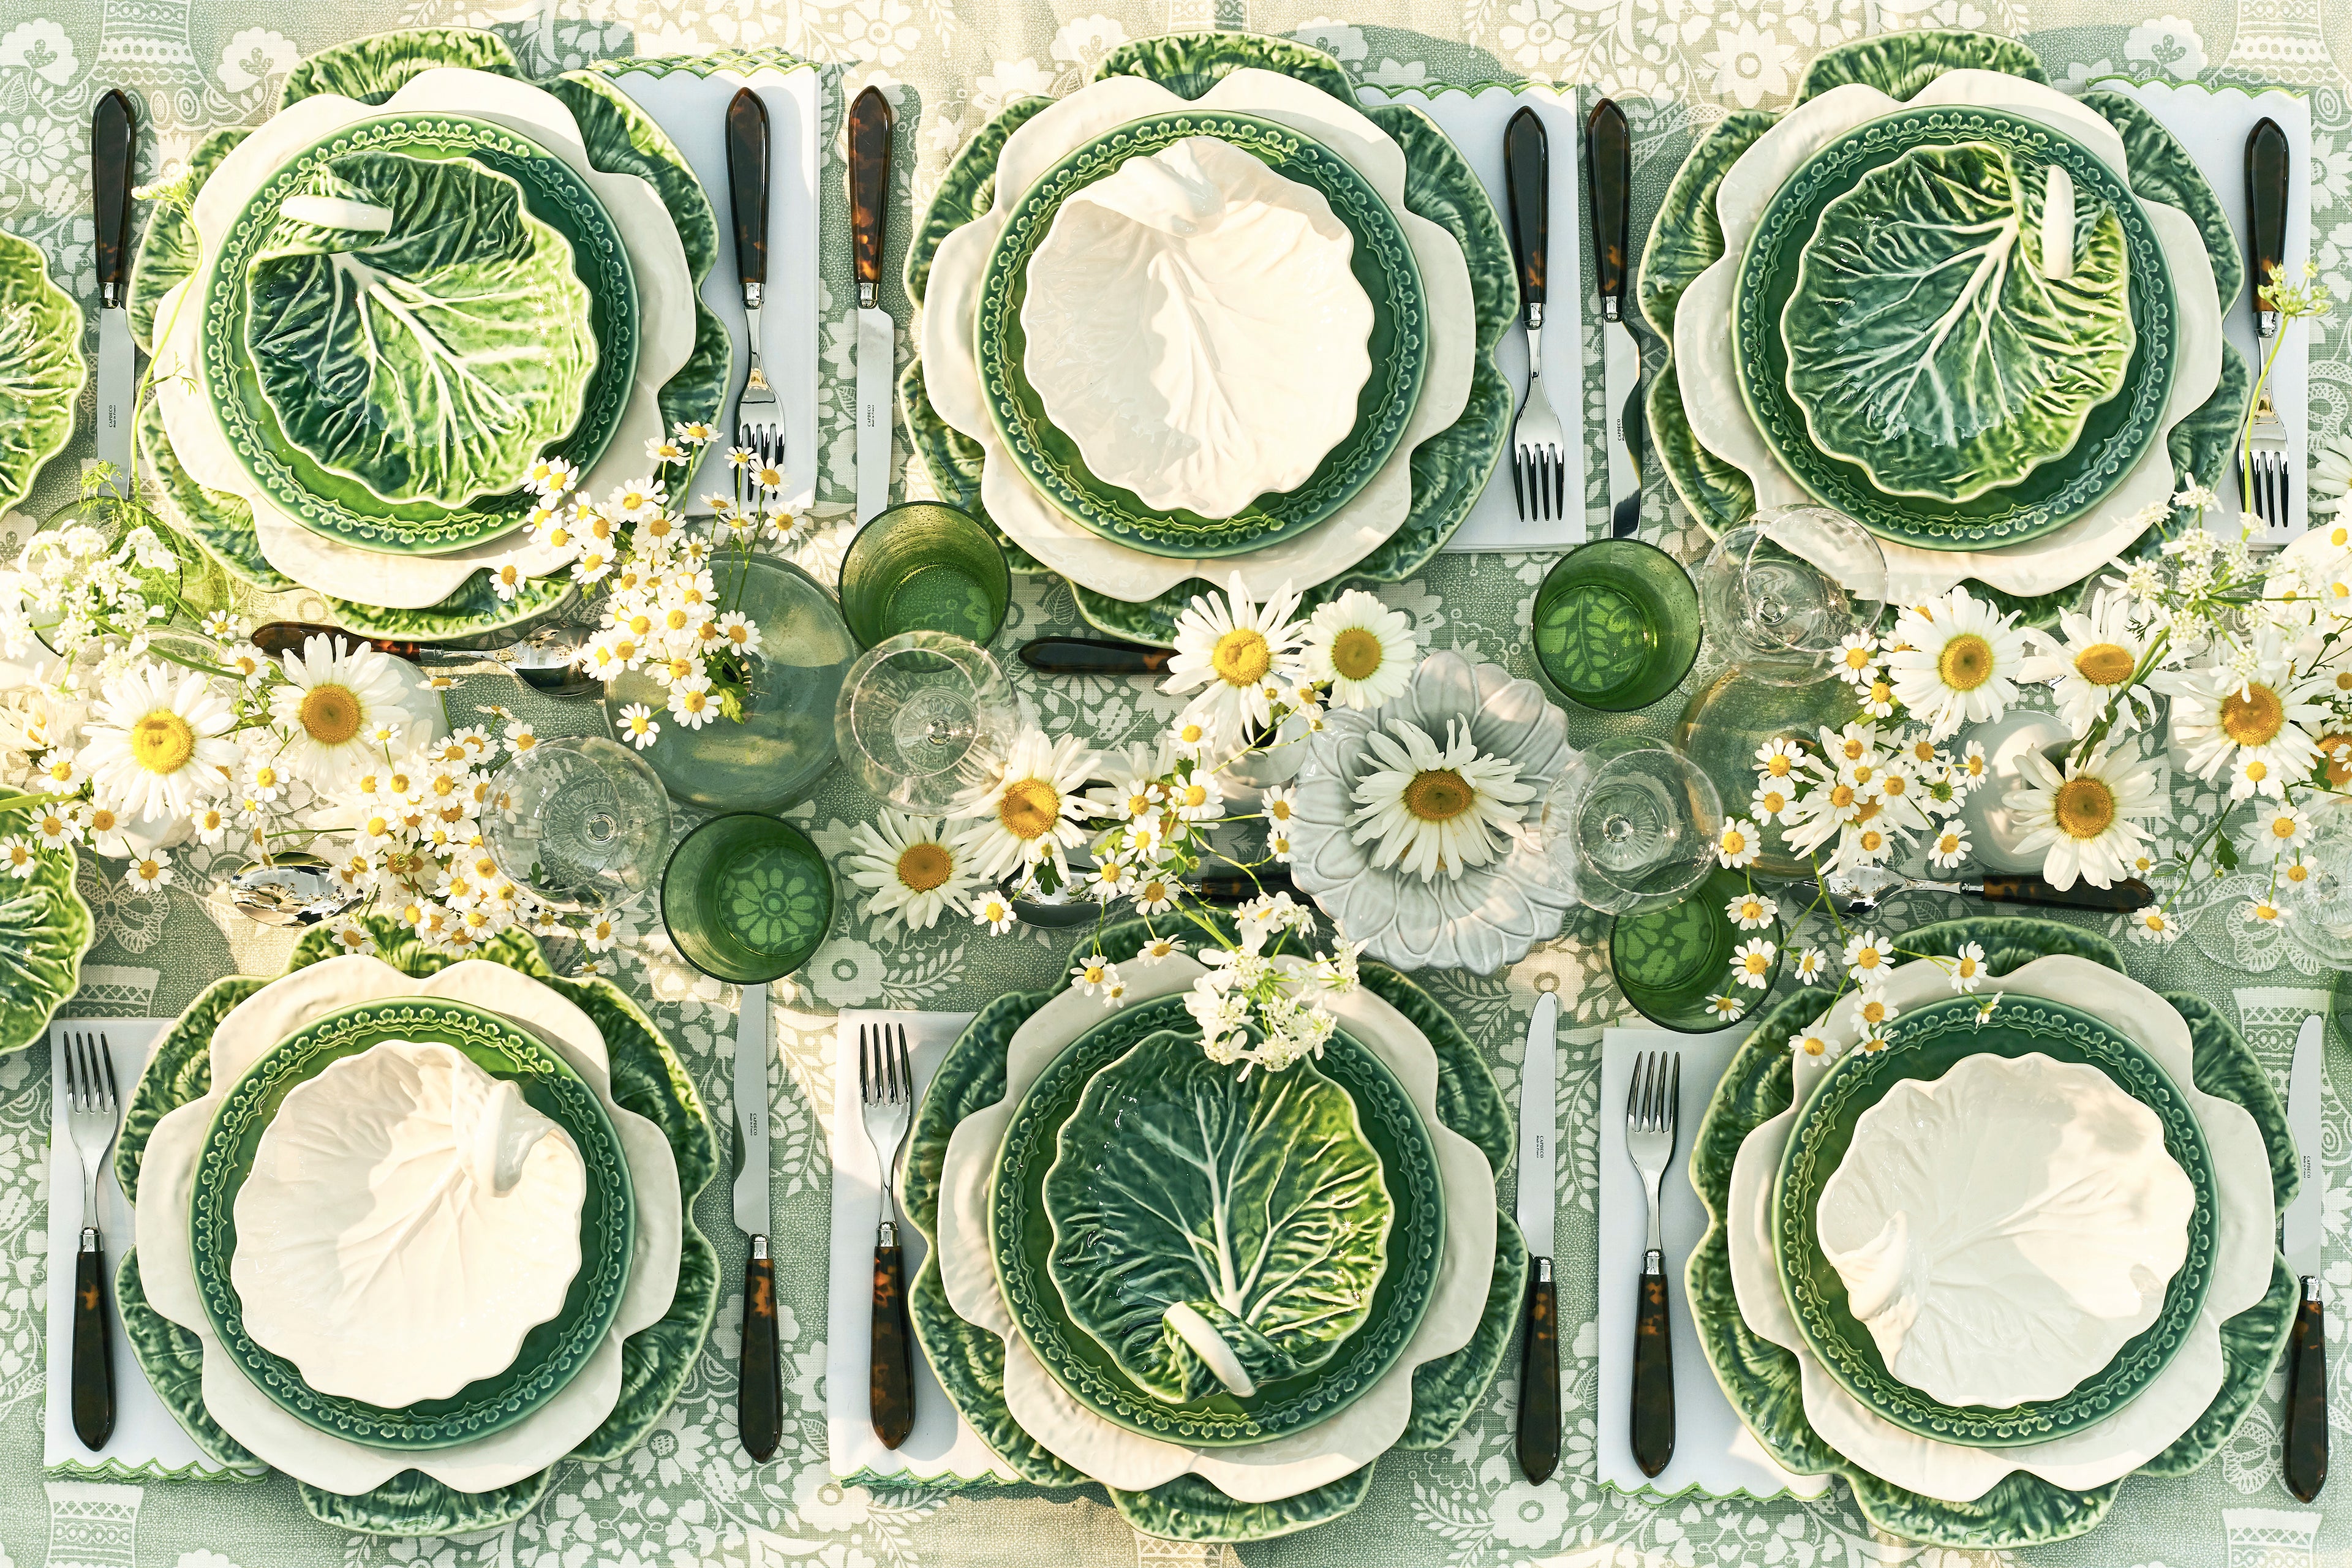 Rent: Medium White Cabbage Leaf Bowl